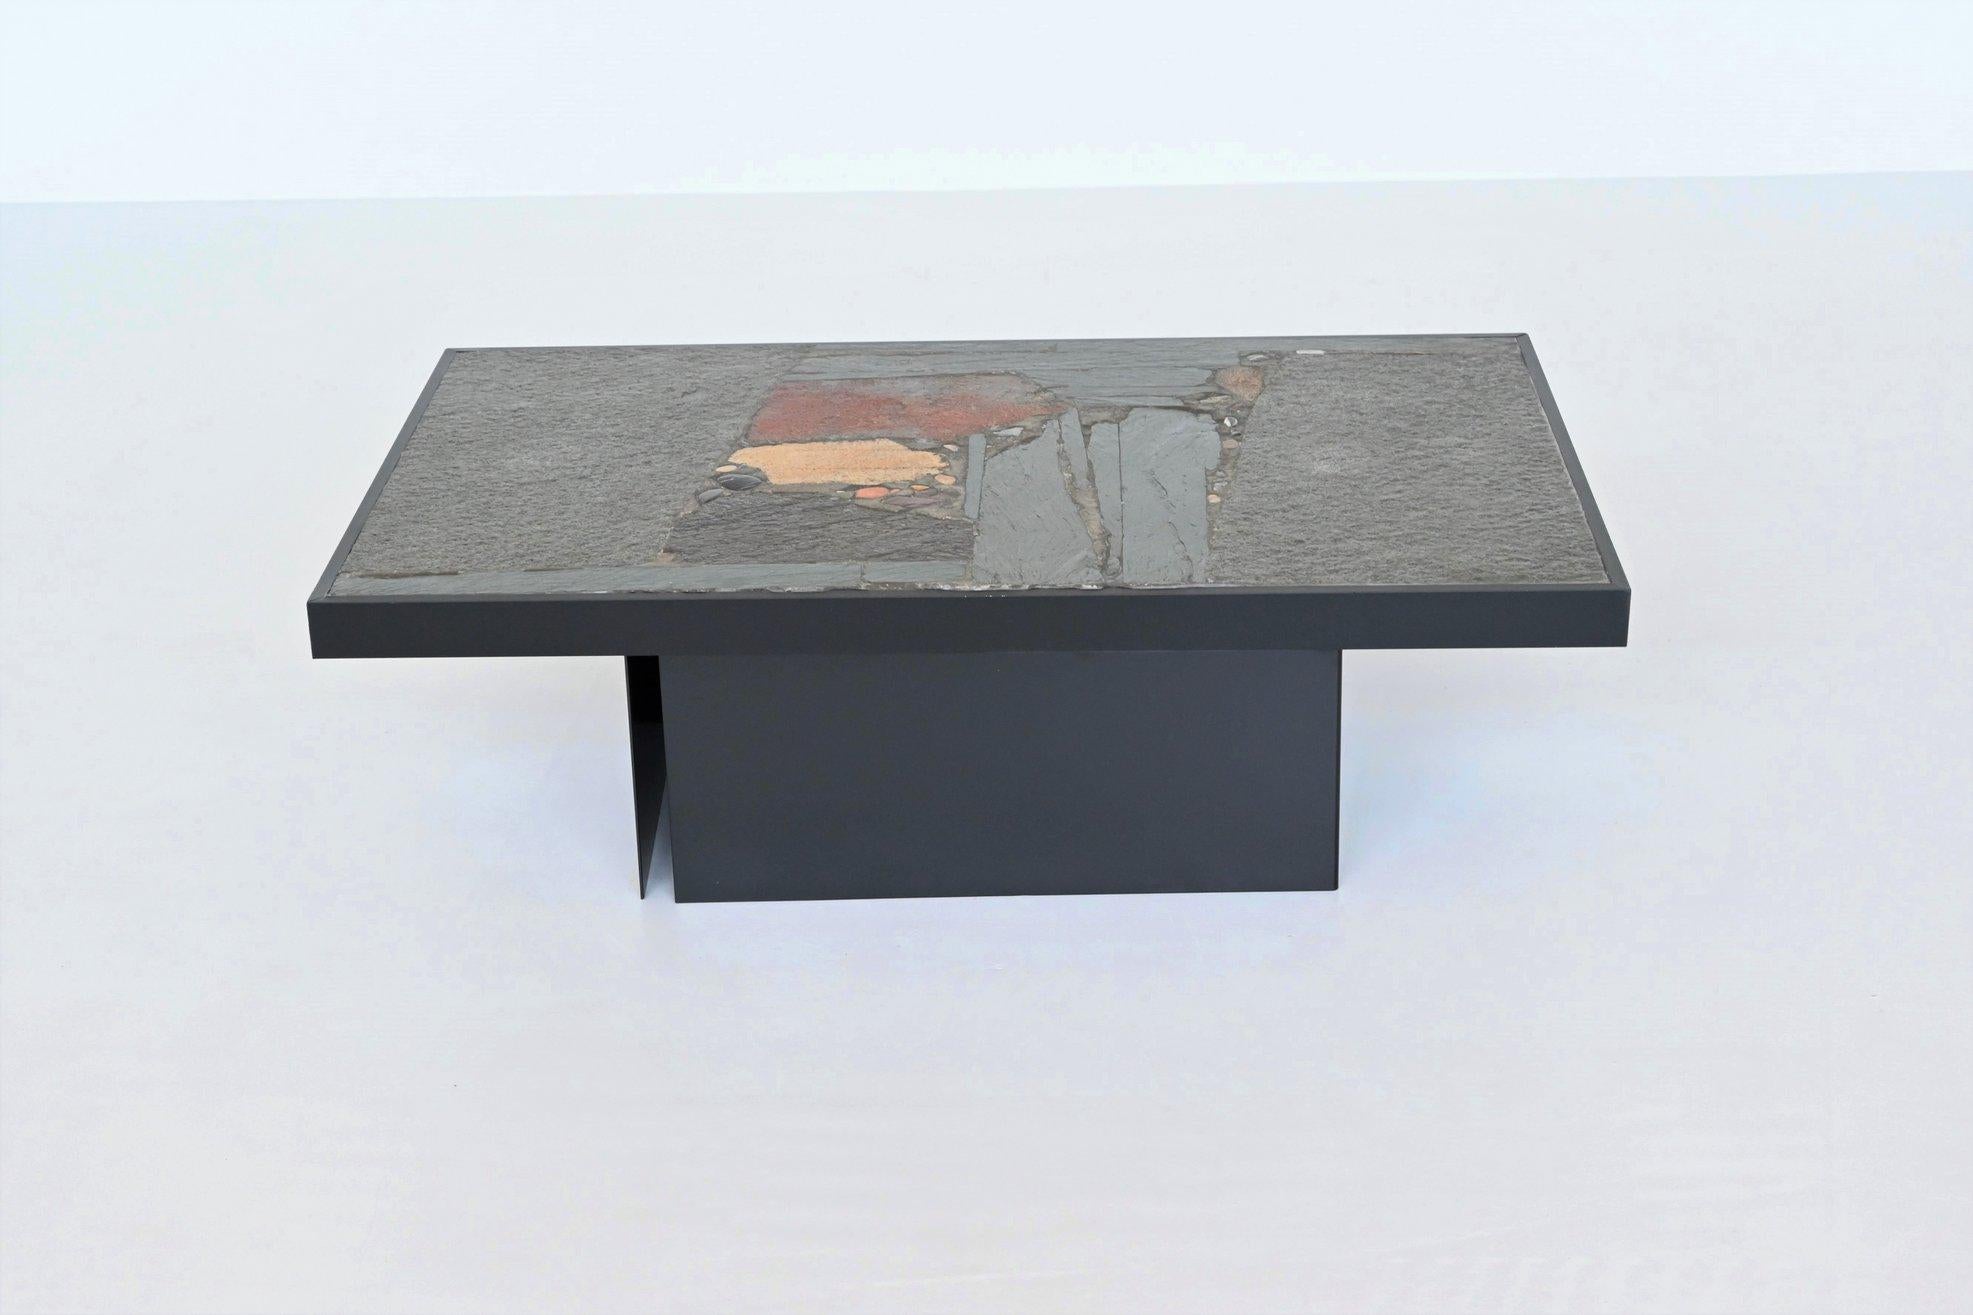 Magnifique table basse de forme rectangulaire conçue et fabriquée par Paul Kingma, Pays-Bas 1970. Le lourd plateau en béton repose sur une base de deux socles en métal laqué noir qui peuvent être placés dans plusieurs positions. Une belle